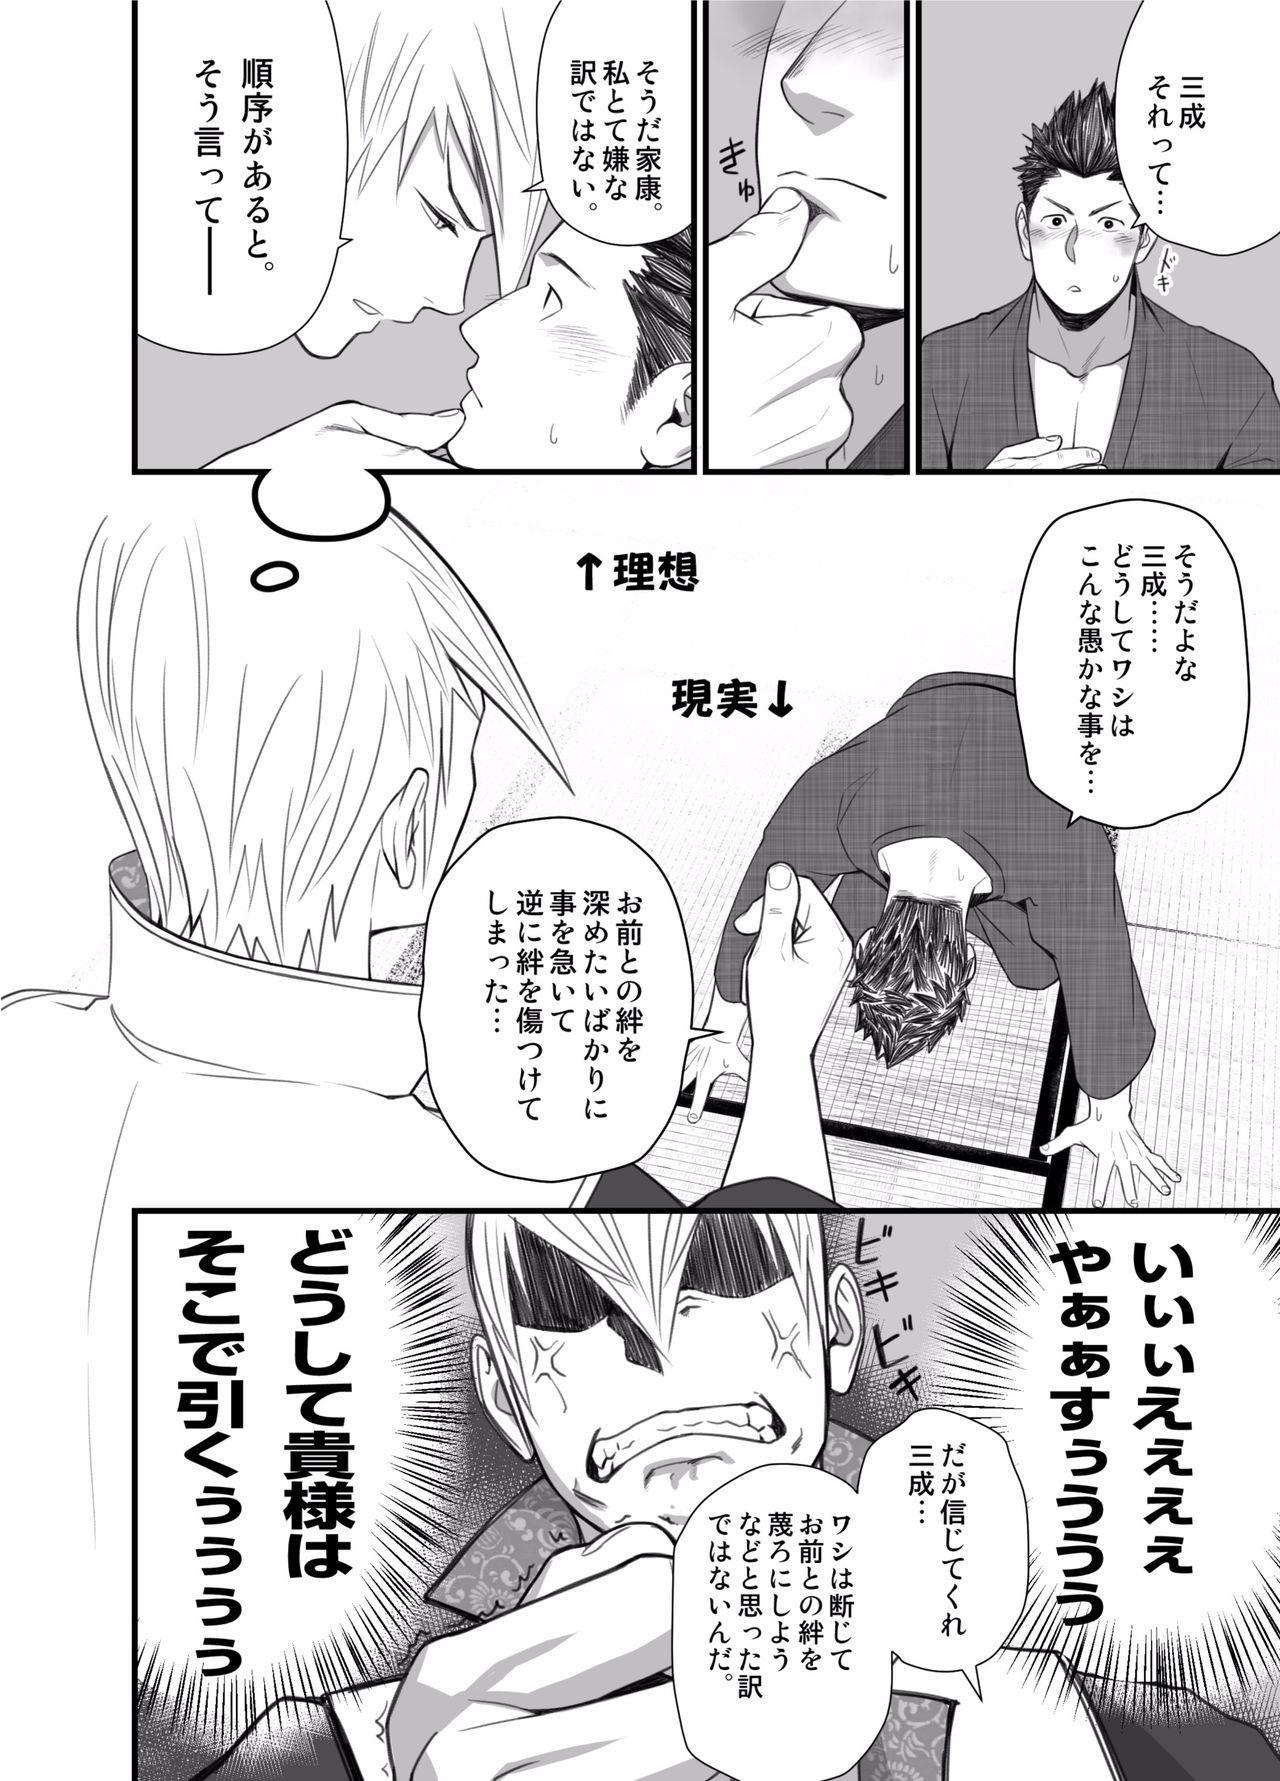 Pantyhose Nichiyu Saki - Sengoku basara Mouth - Page 8